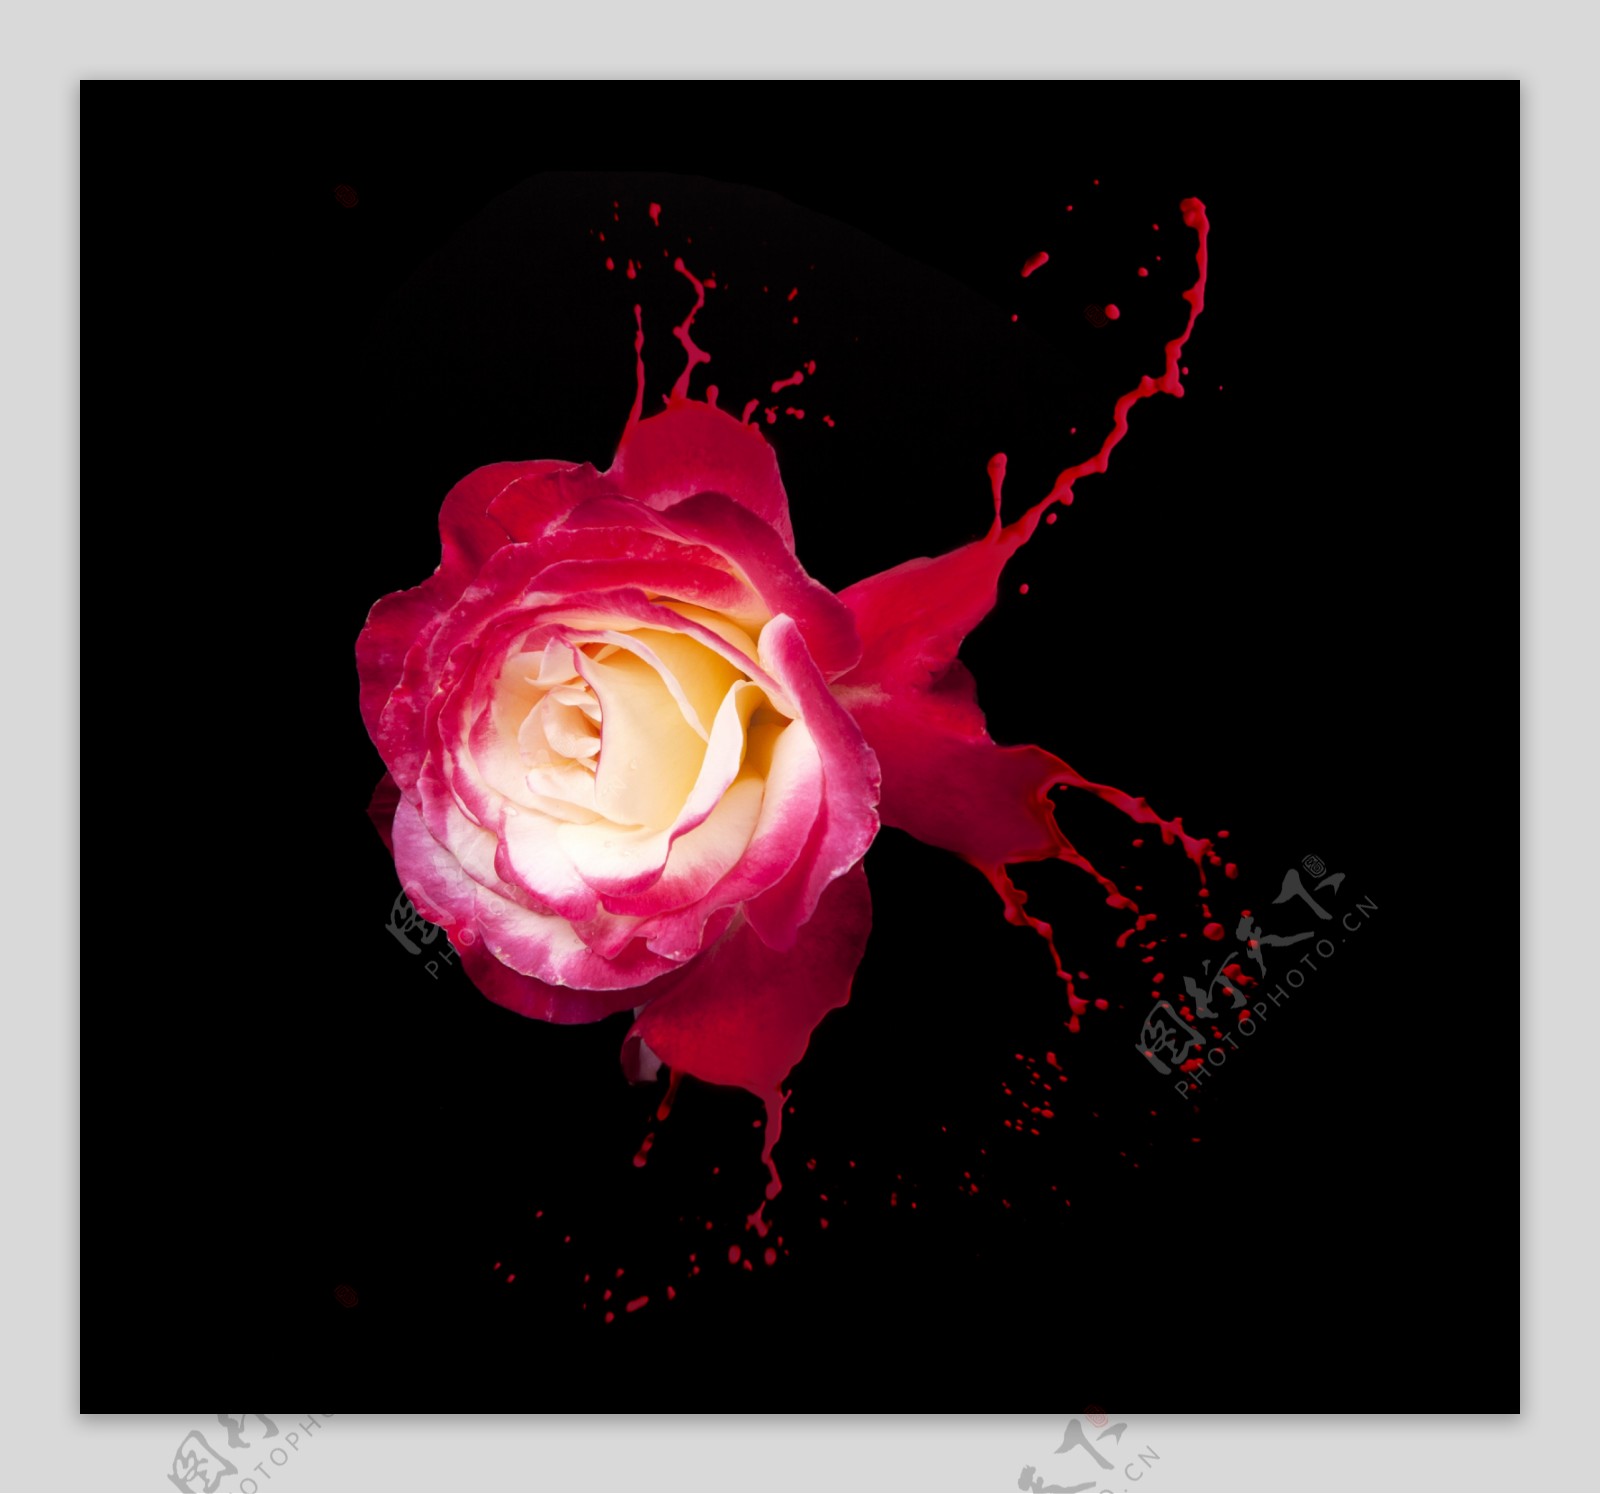 动感油漆与玫瑰花图片